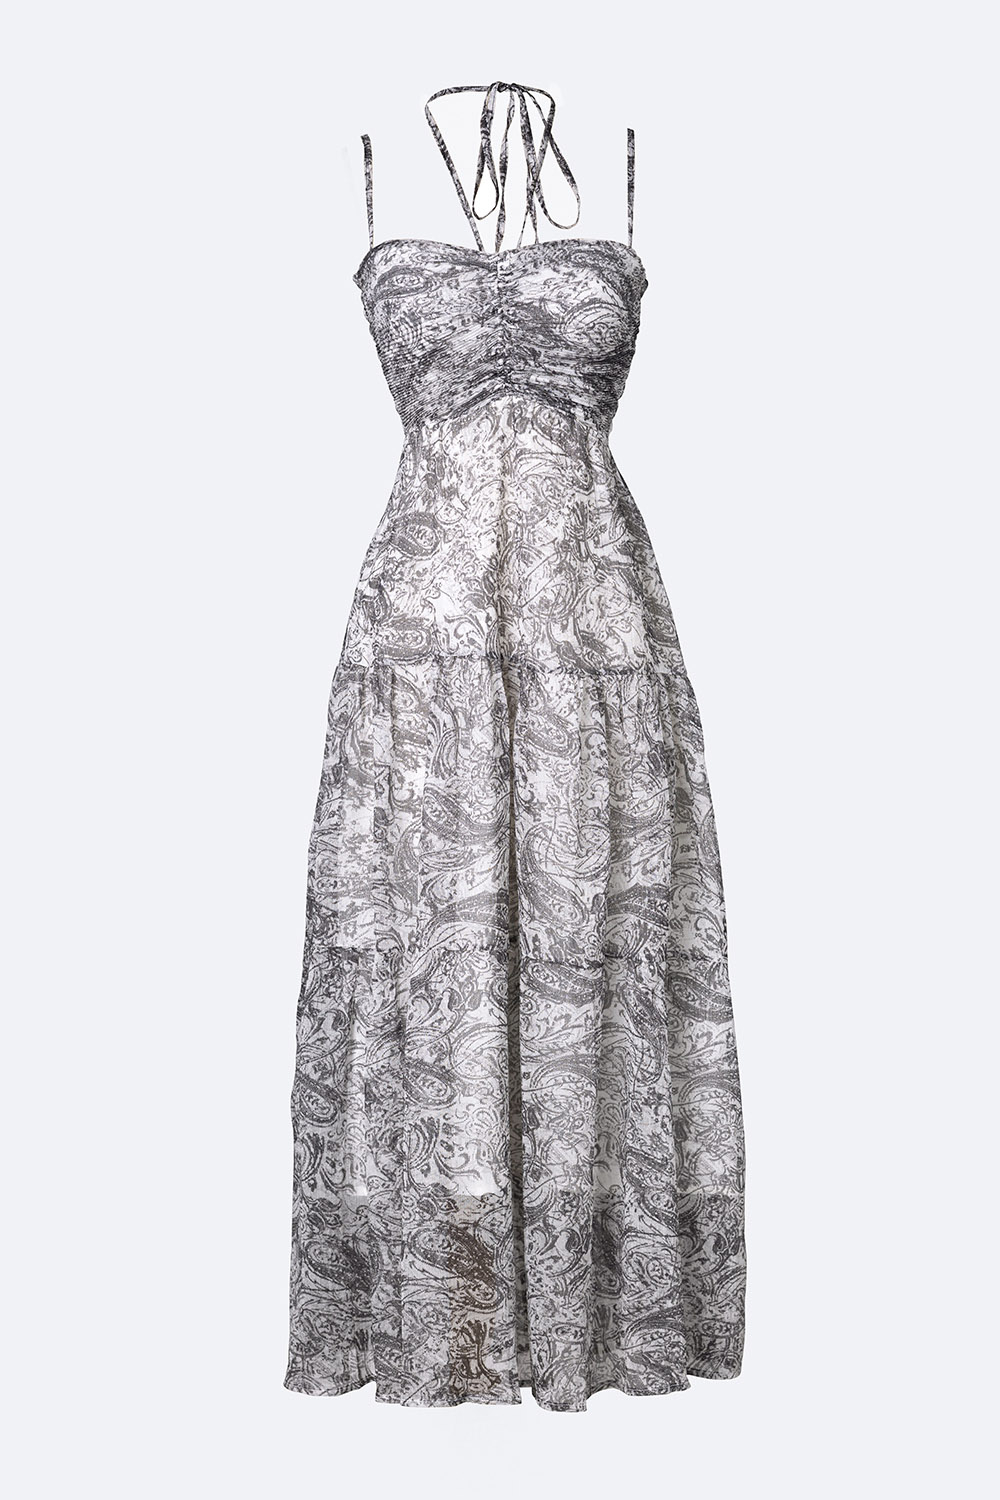 Sale sốc-- Váy ren 2 dây màu trắng 640k giảm còn 320k | Shopee Việt Nam